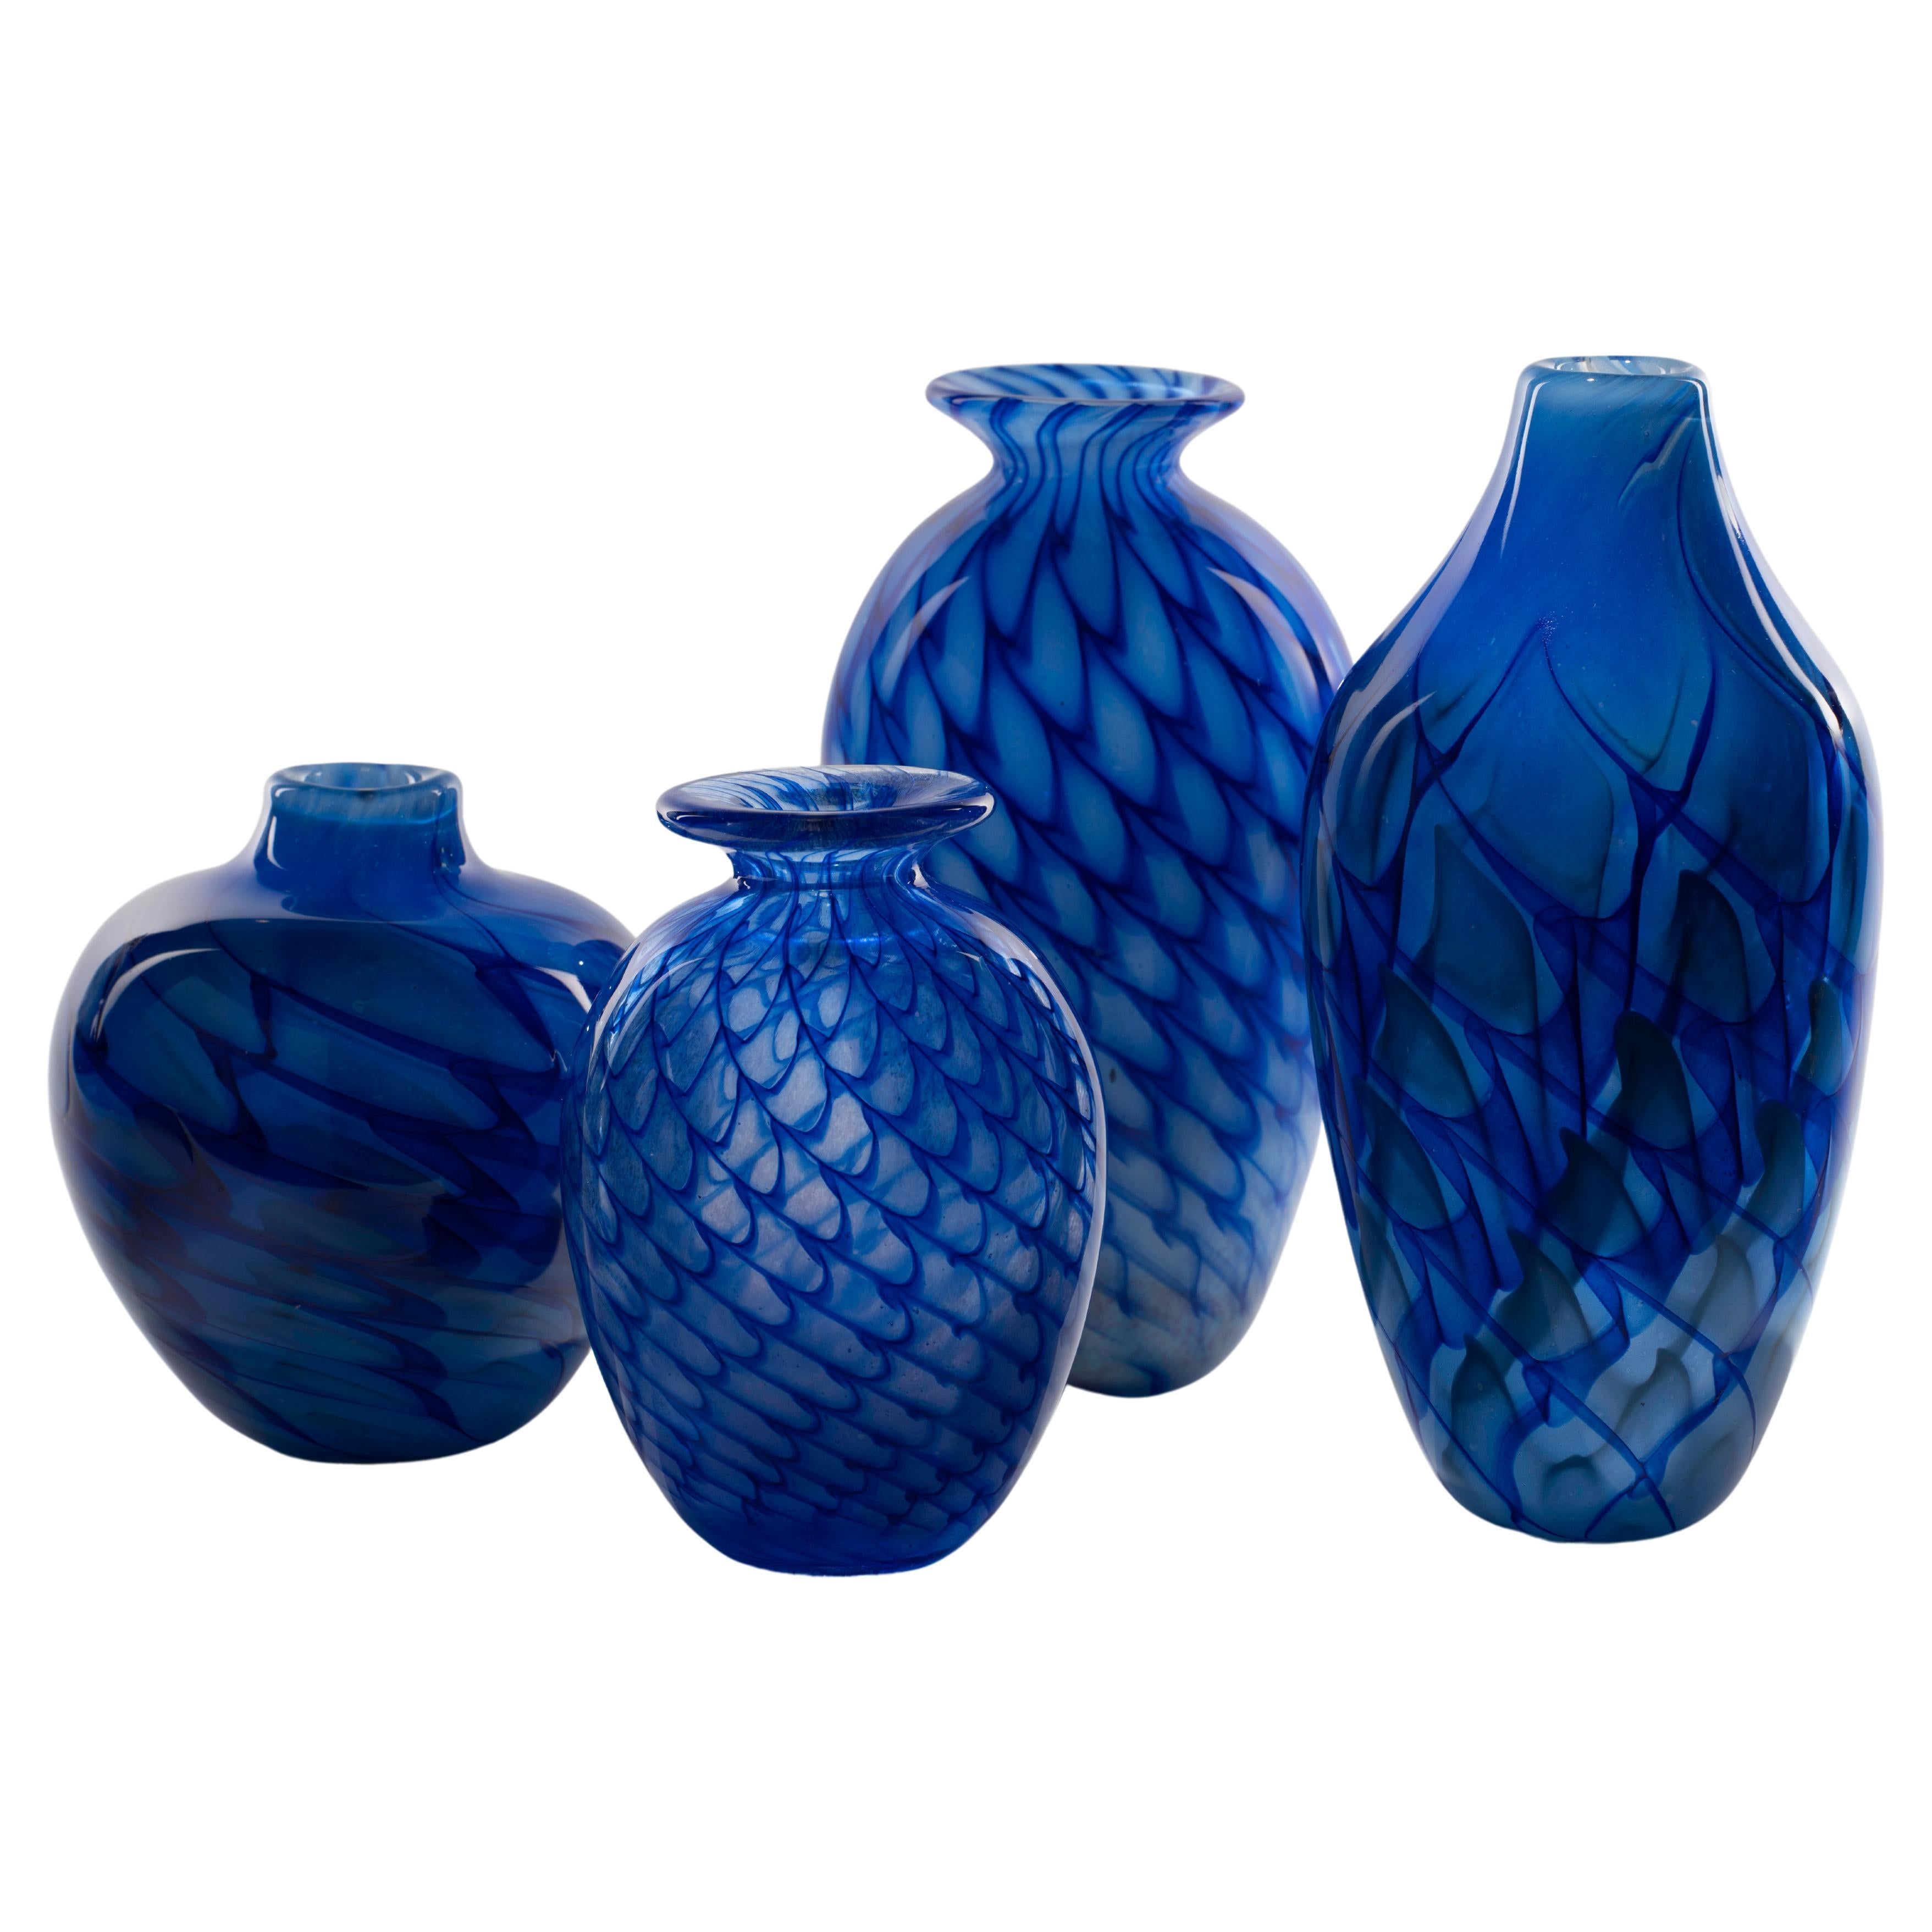 Blaue Wellen Kollektion - Eine Kollektion eleganter Vasen mit auffälligen Linien